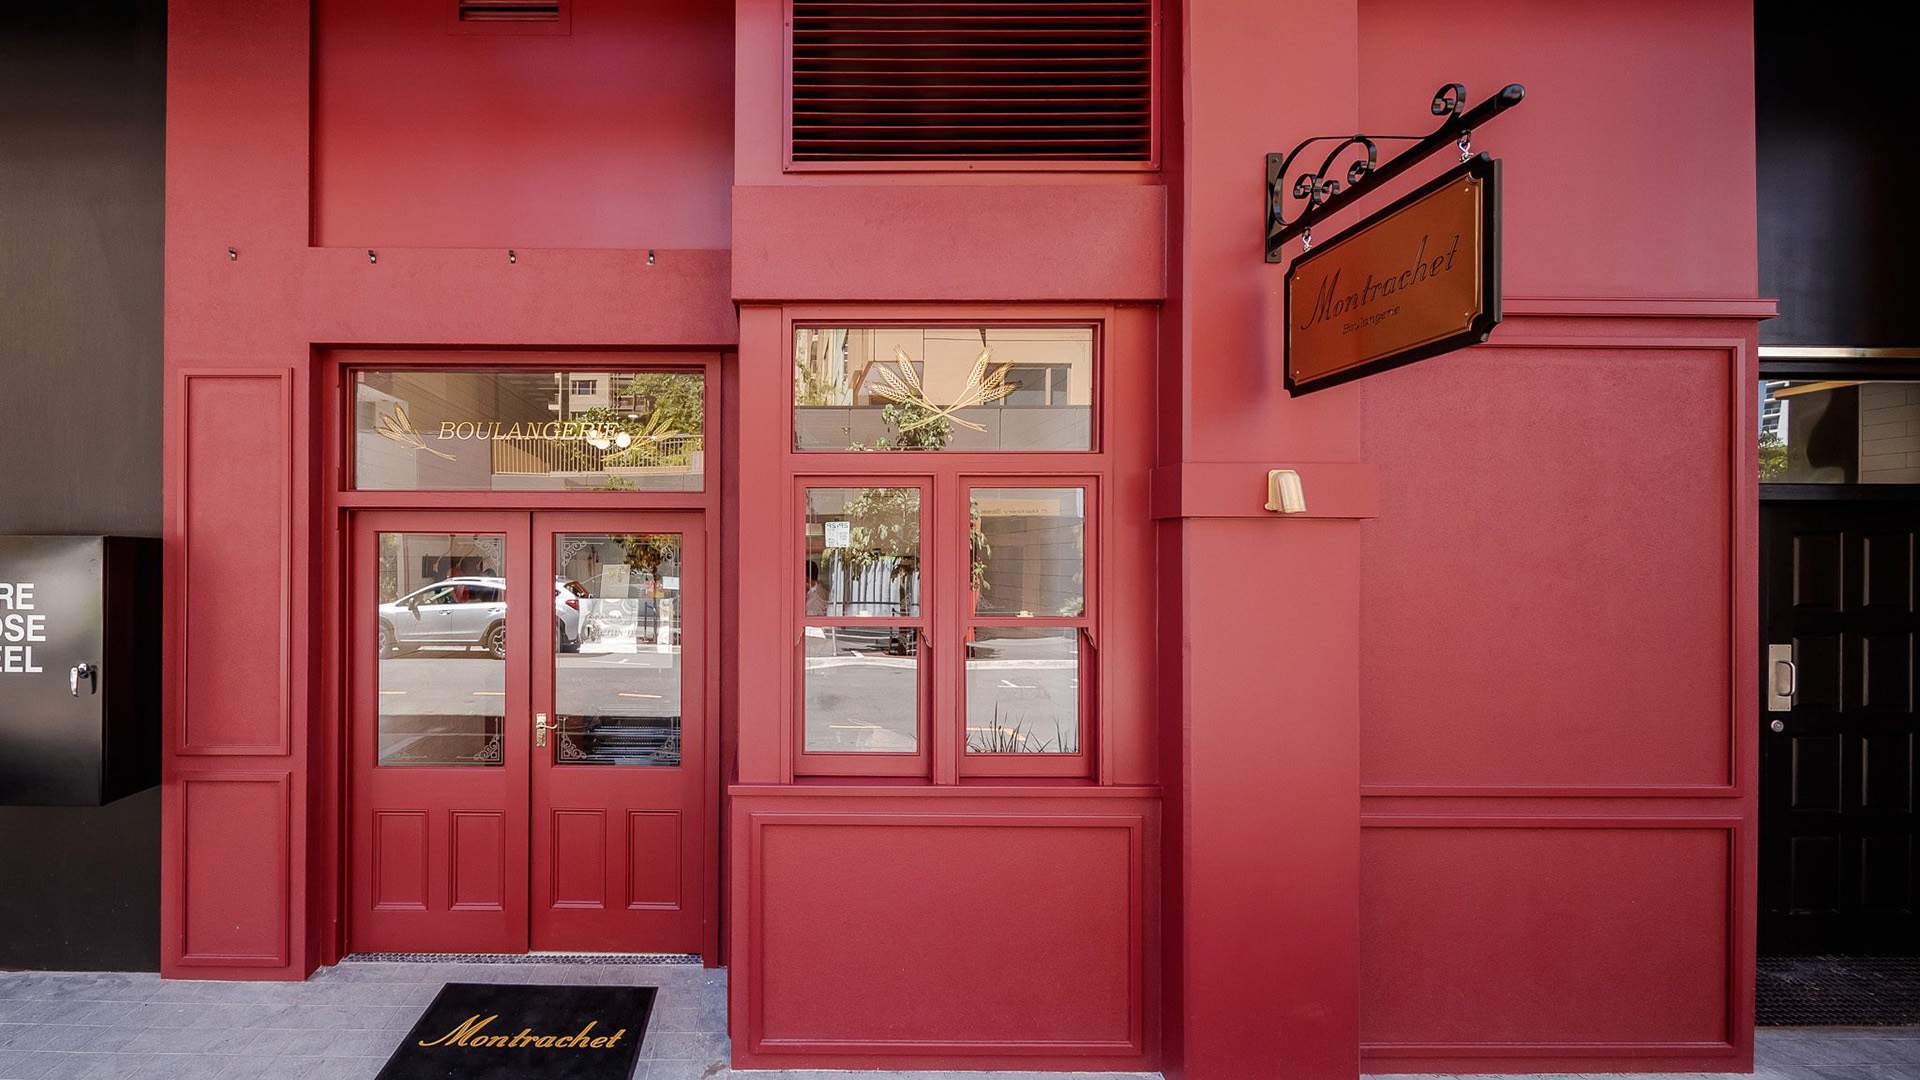 Montrachet's Long-Awaited King Street Boulangerie Is Now Open